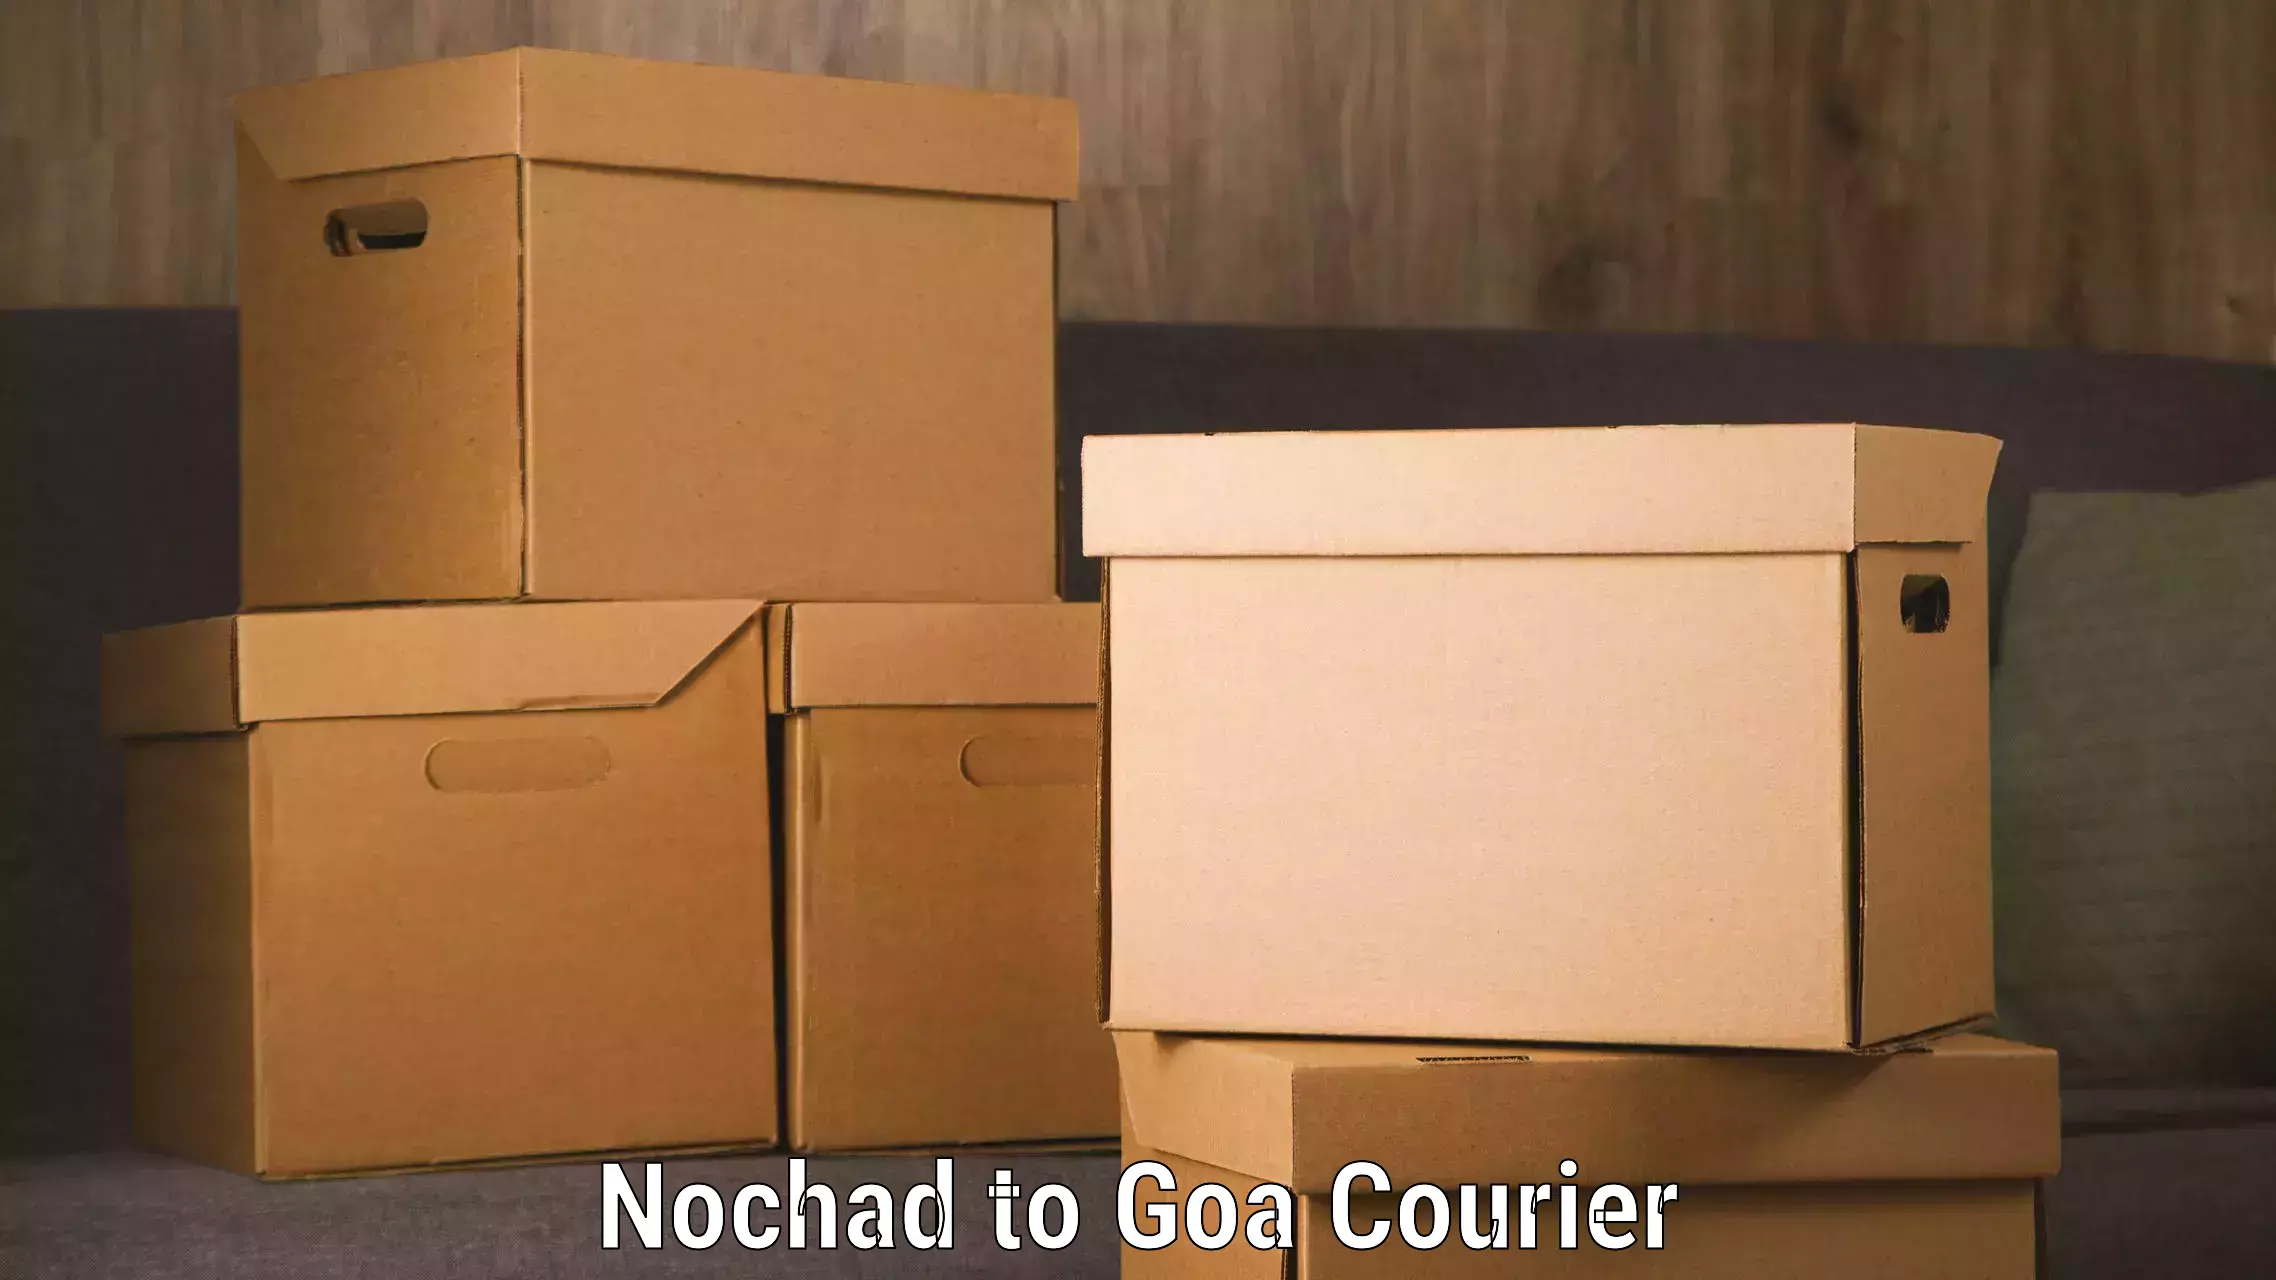 High-capacity parcel service Nochad to Ponda